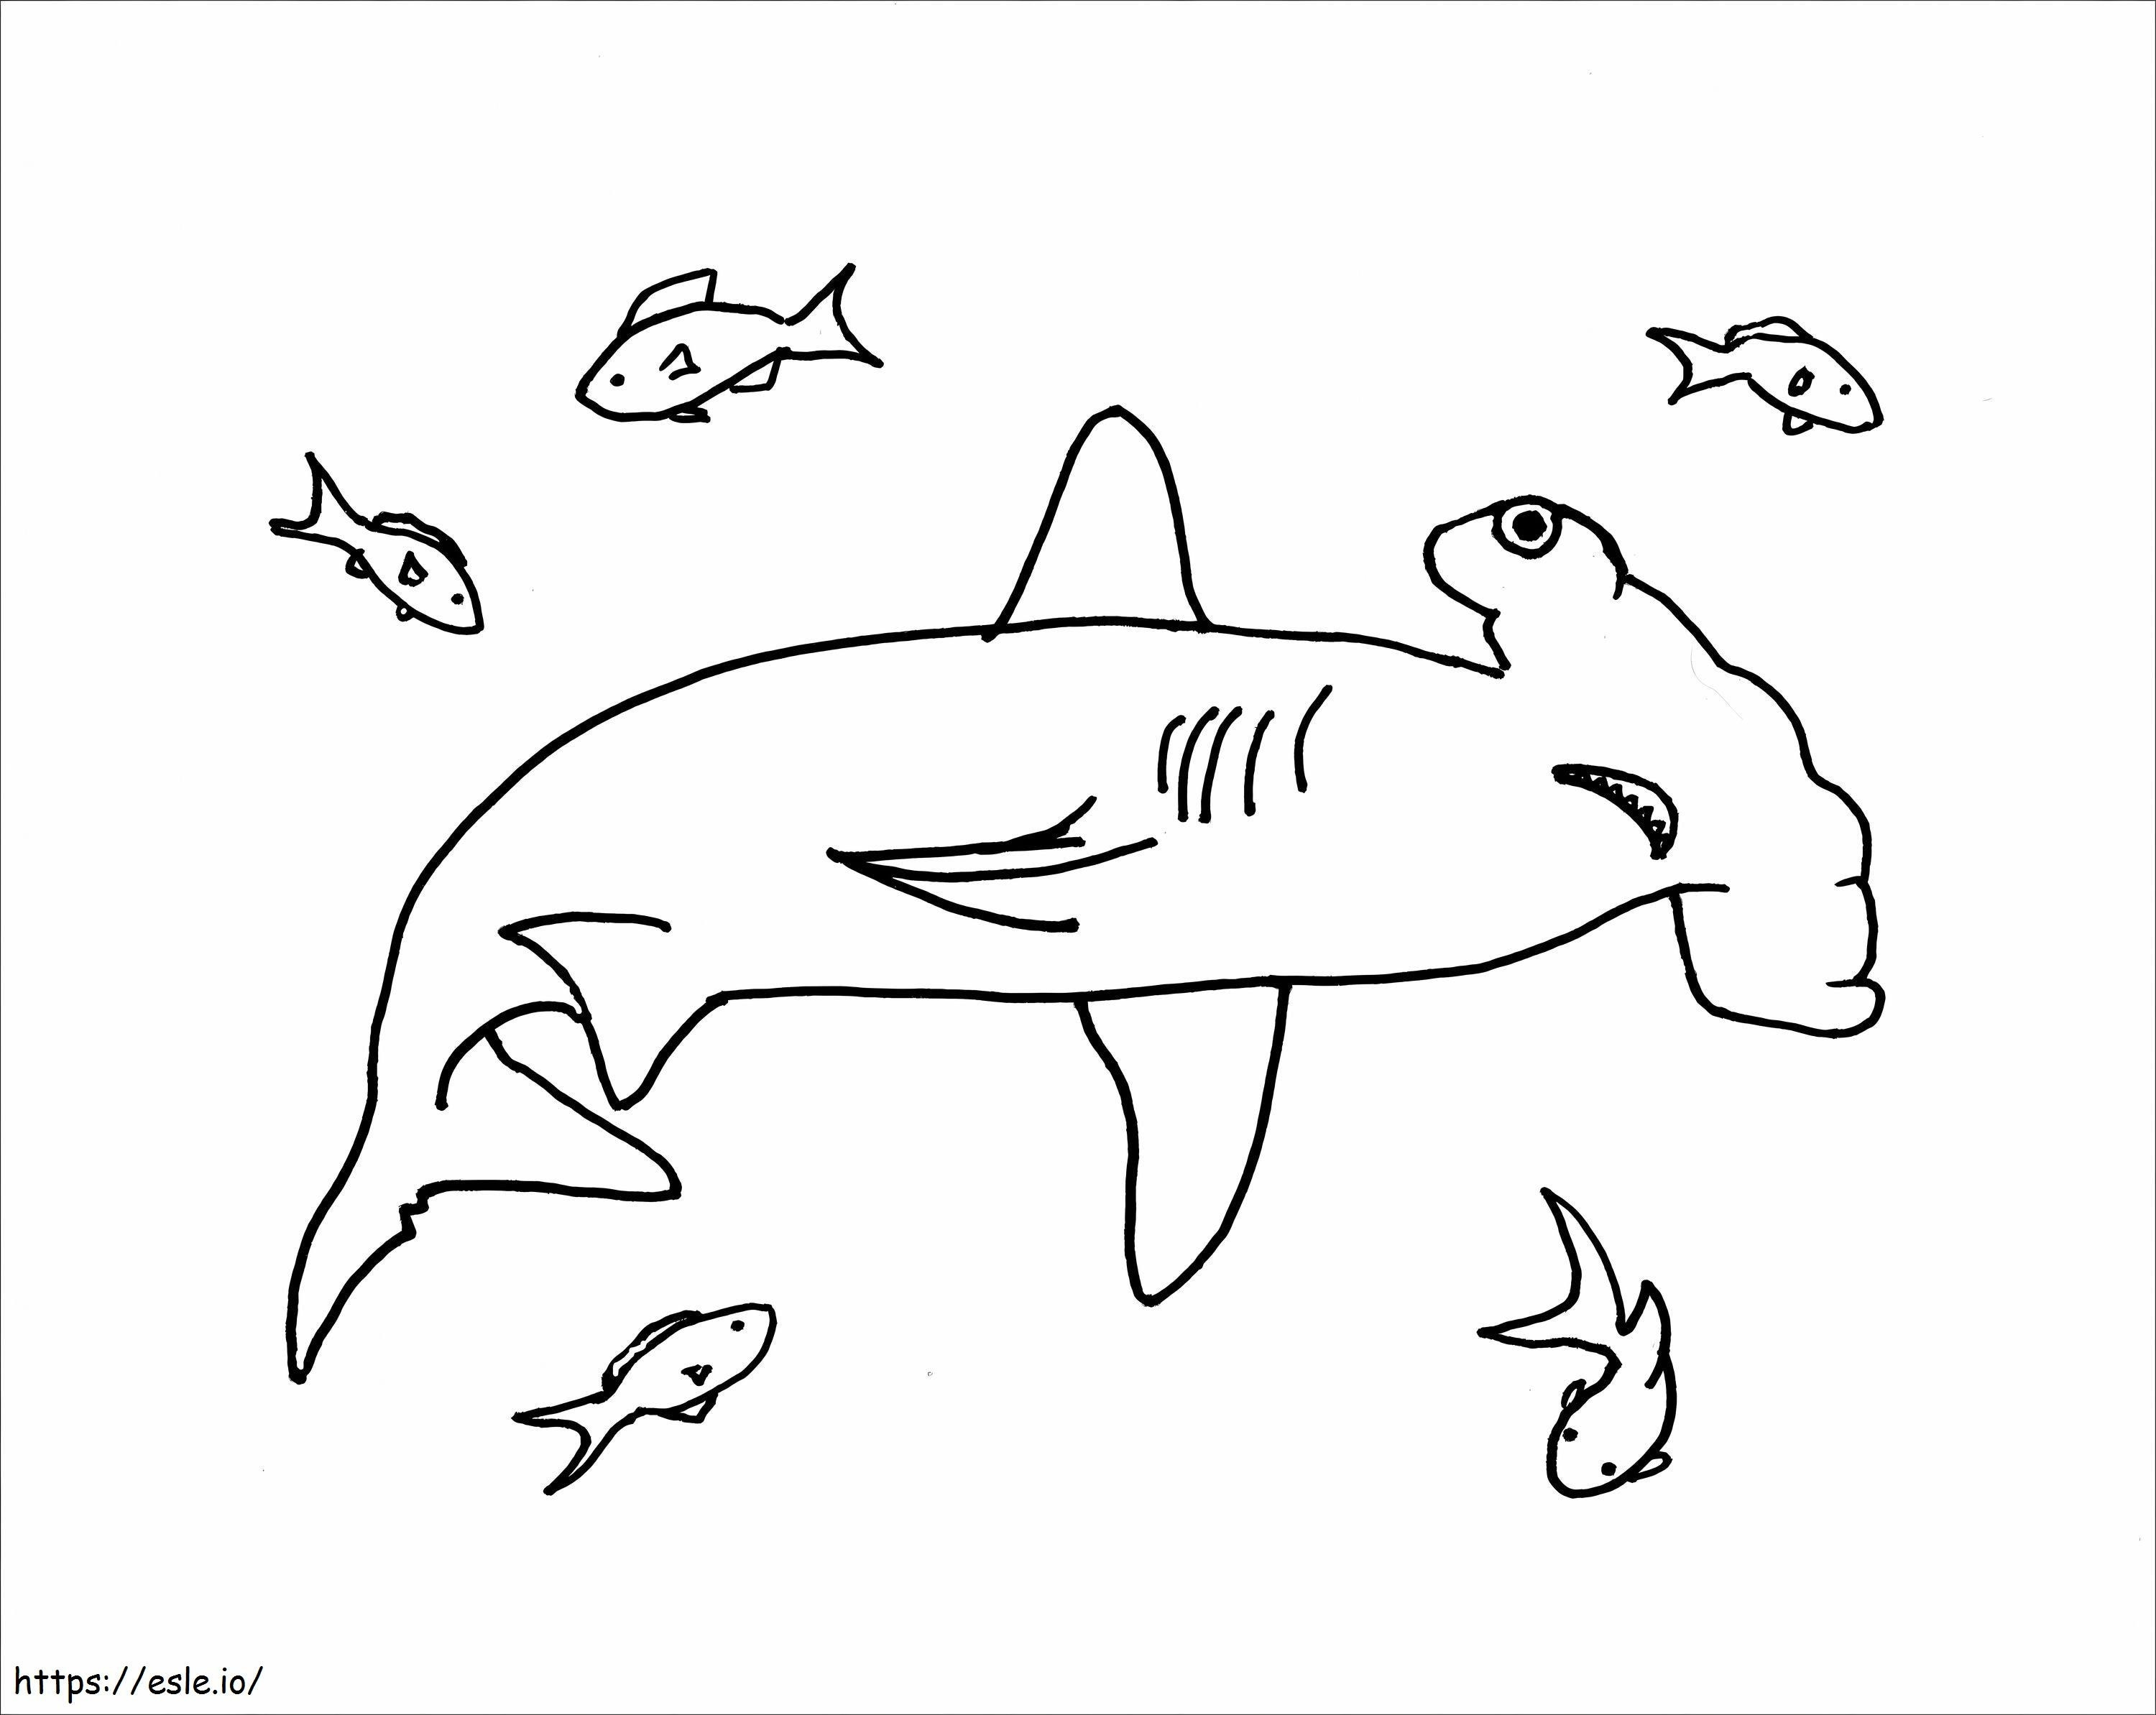 Tubarão-martelo com peixe escamado para colorir